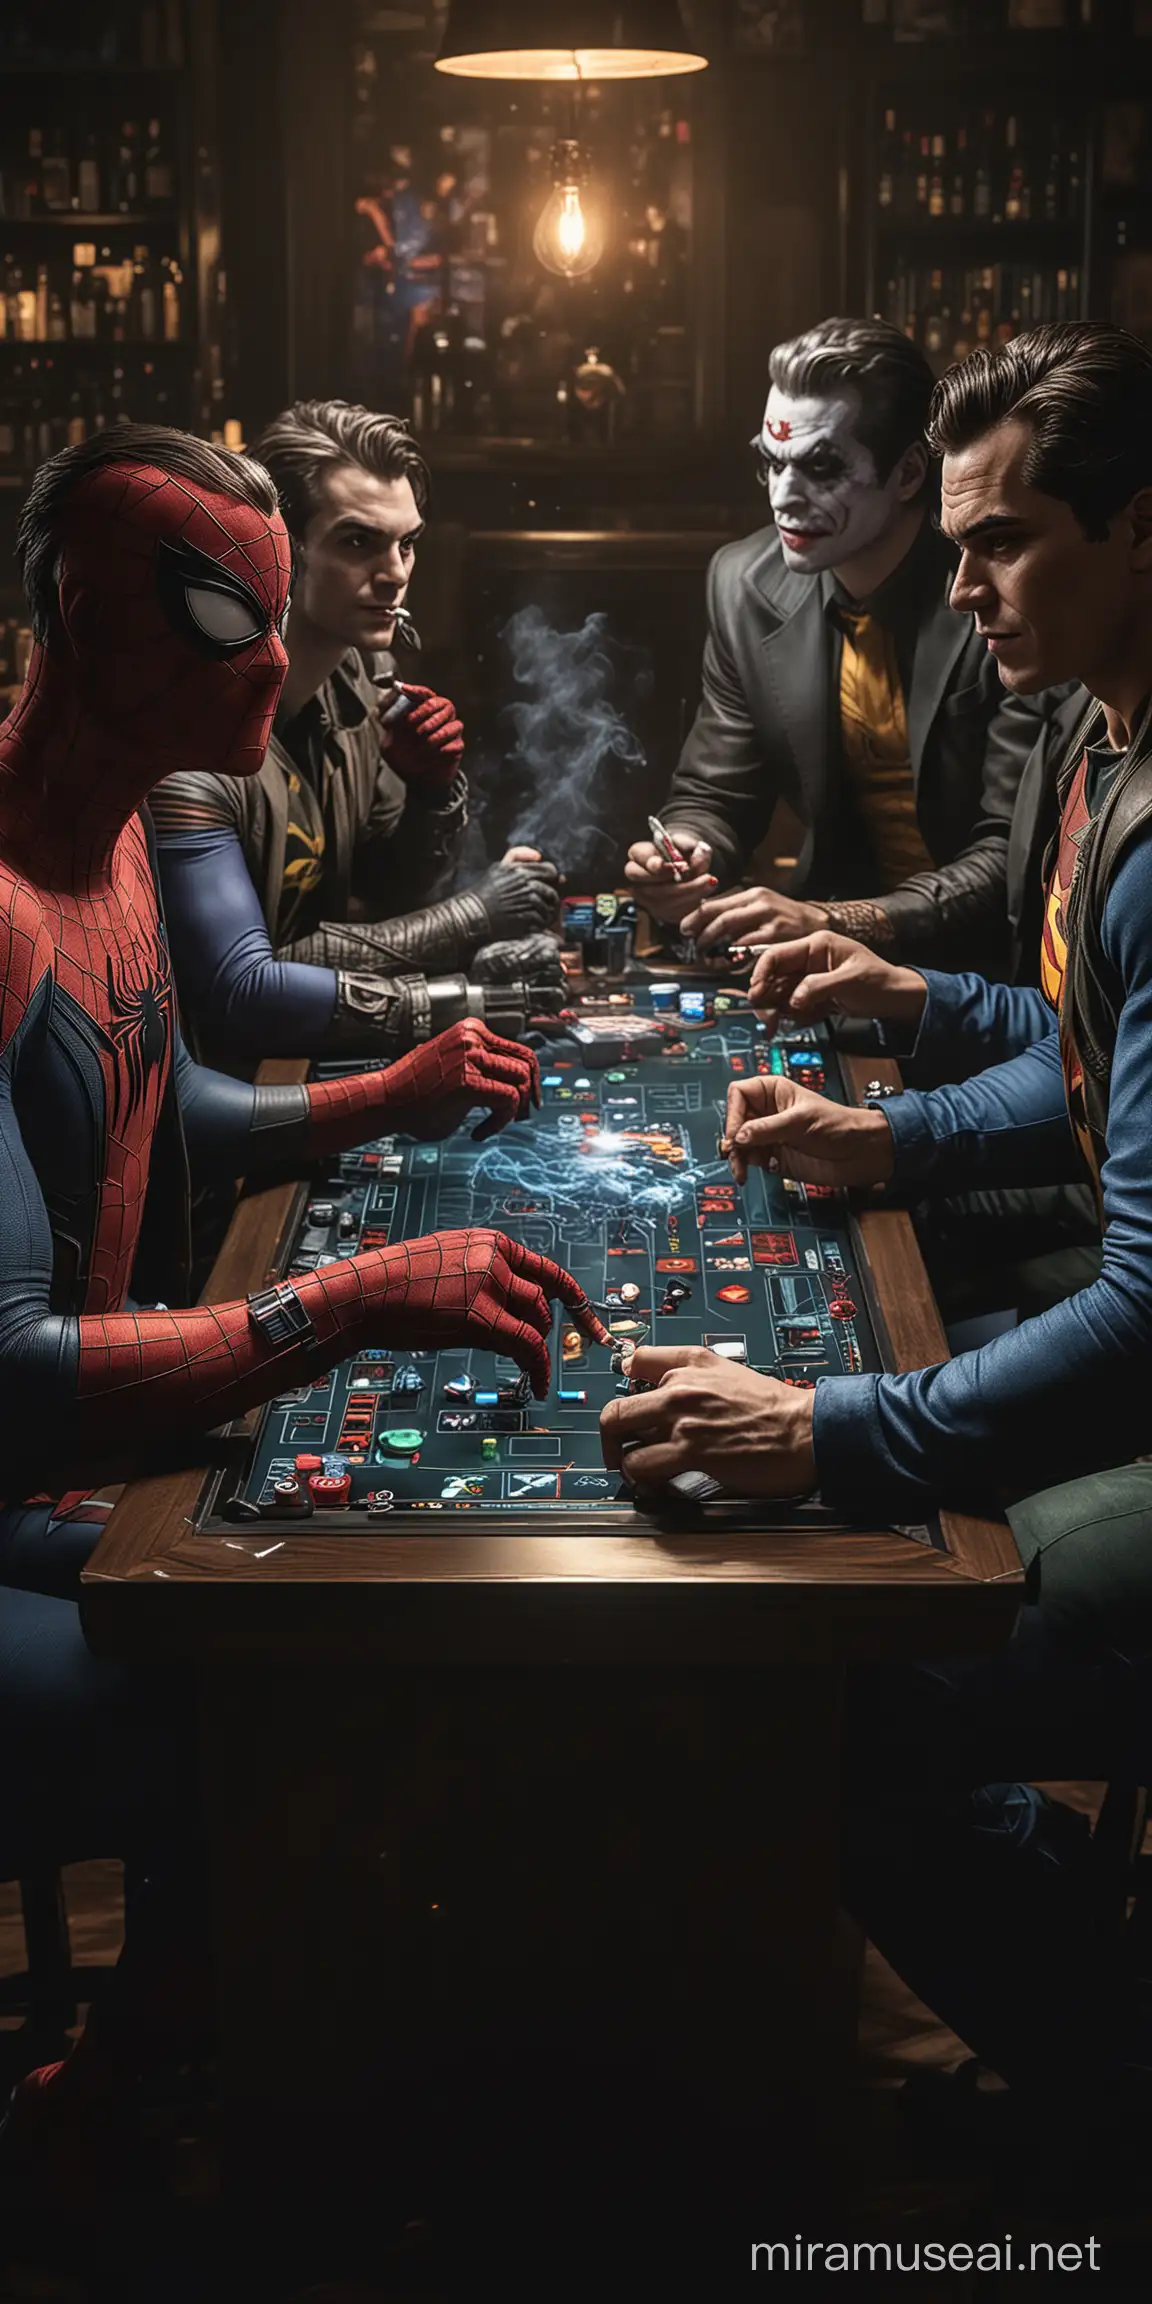 Spiderman, Badman, Superman und der Joker sitzen an einem Spieltisch zusammen und rauchen und spielen am digitalen elektrischen  „fun4four“ Touch-Spieltisch zusammen in einer dunklen Bar.